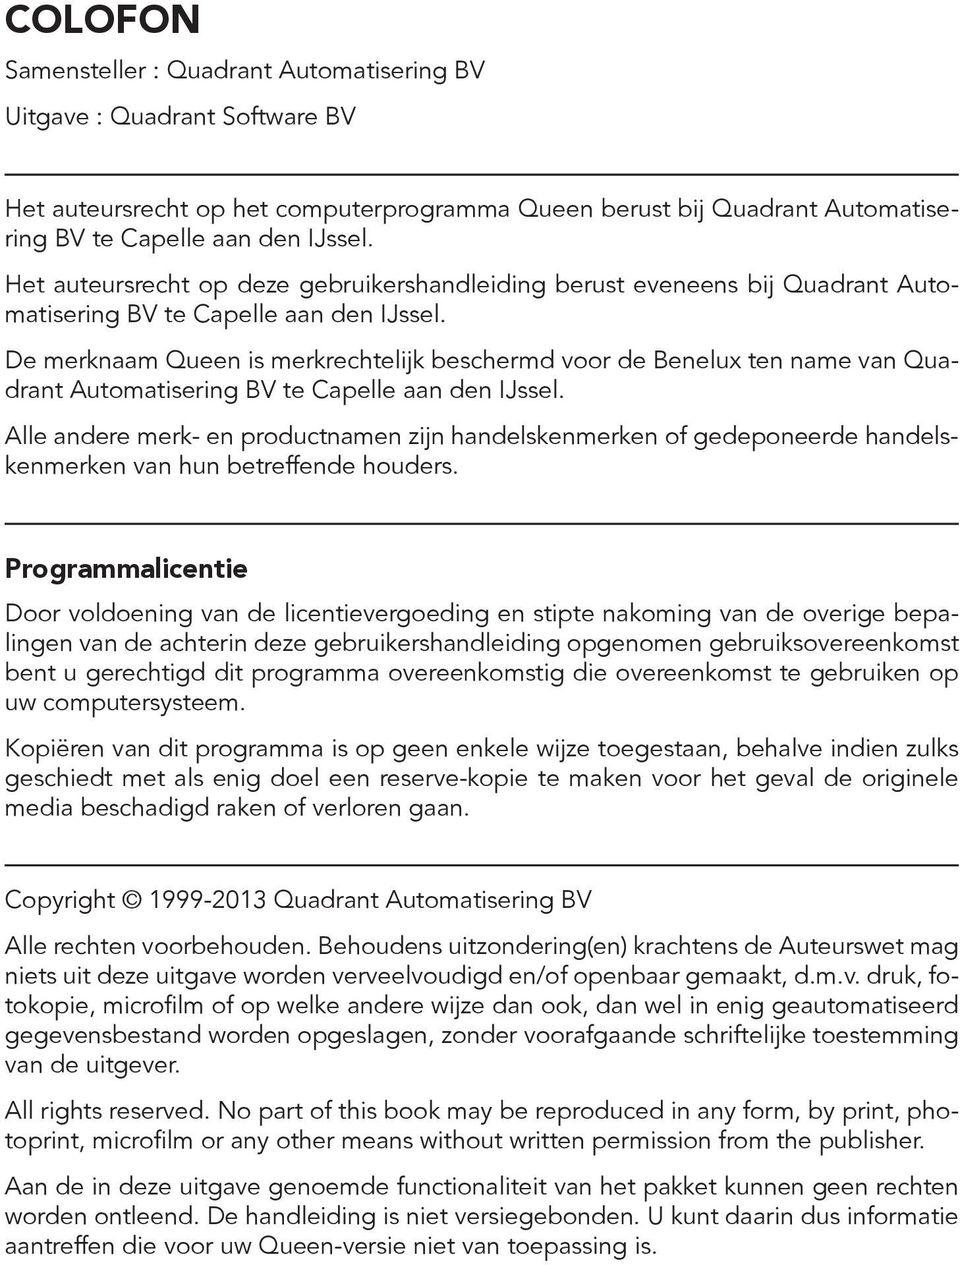 De merknaam Queen is merkrechtelijk beschermd voor de Benelux ten name van Quadrant Automatisering BV te Capelle aan den IJssel.